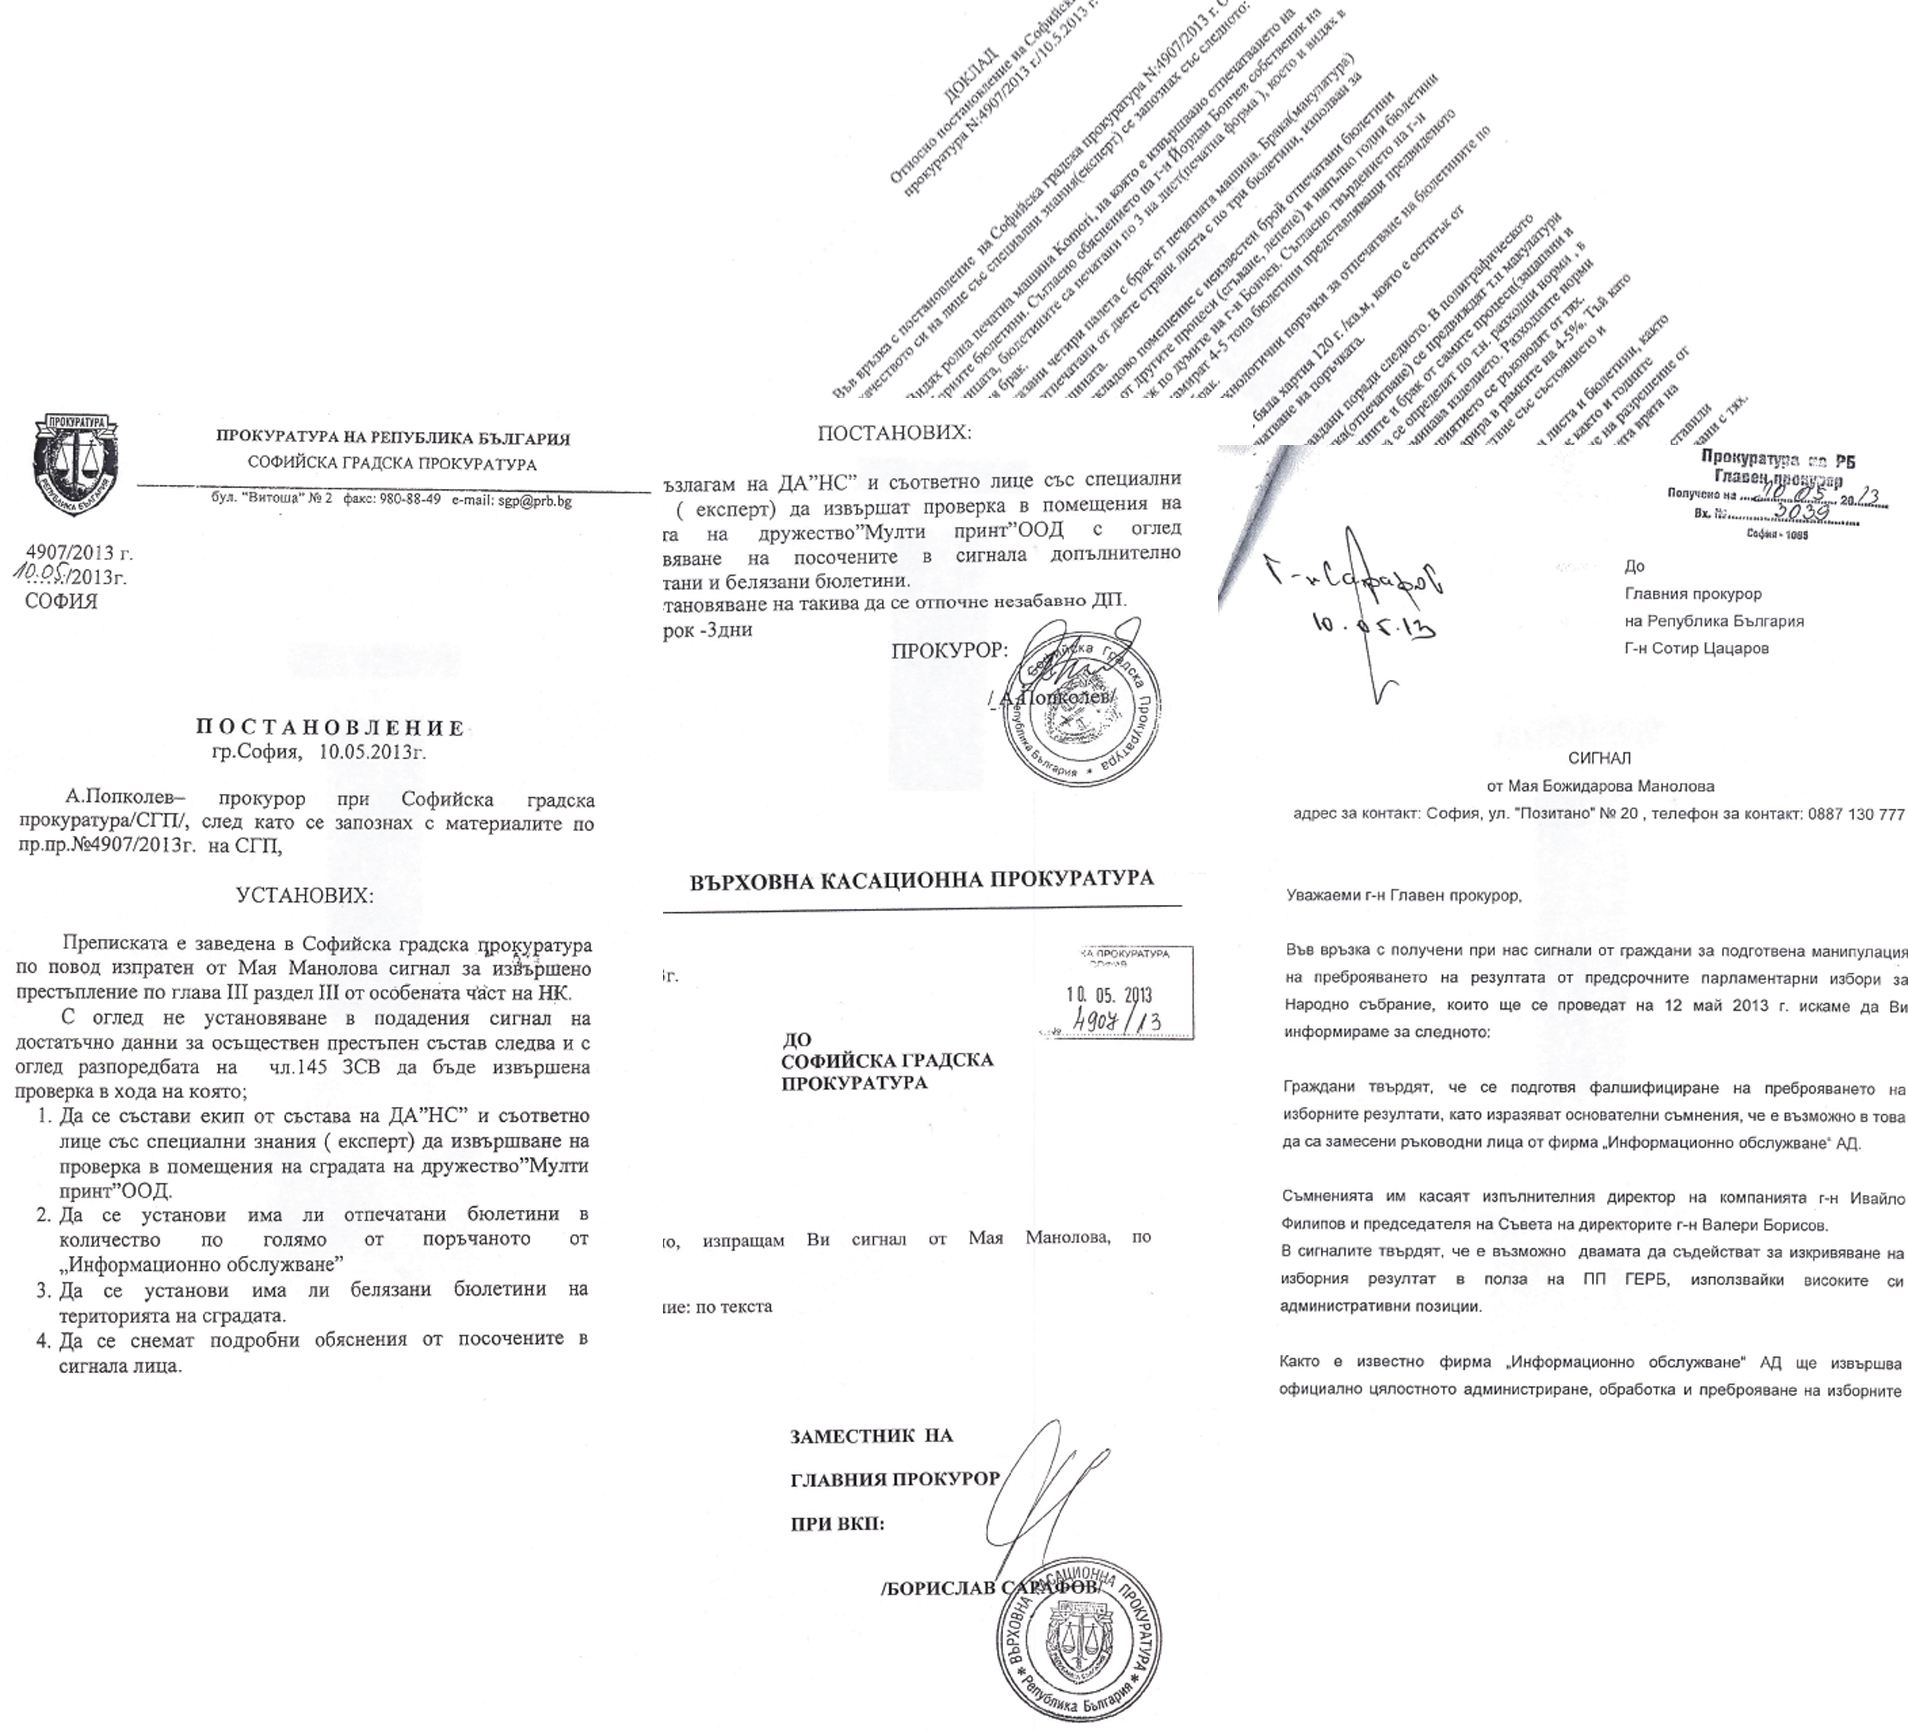 Факсимиле на документите, прикачени към писмото